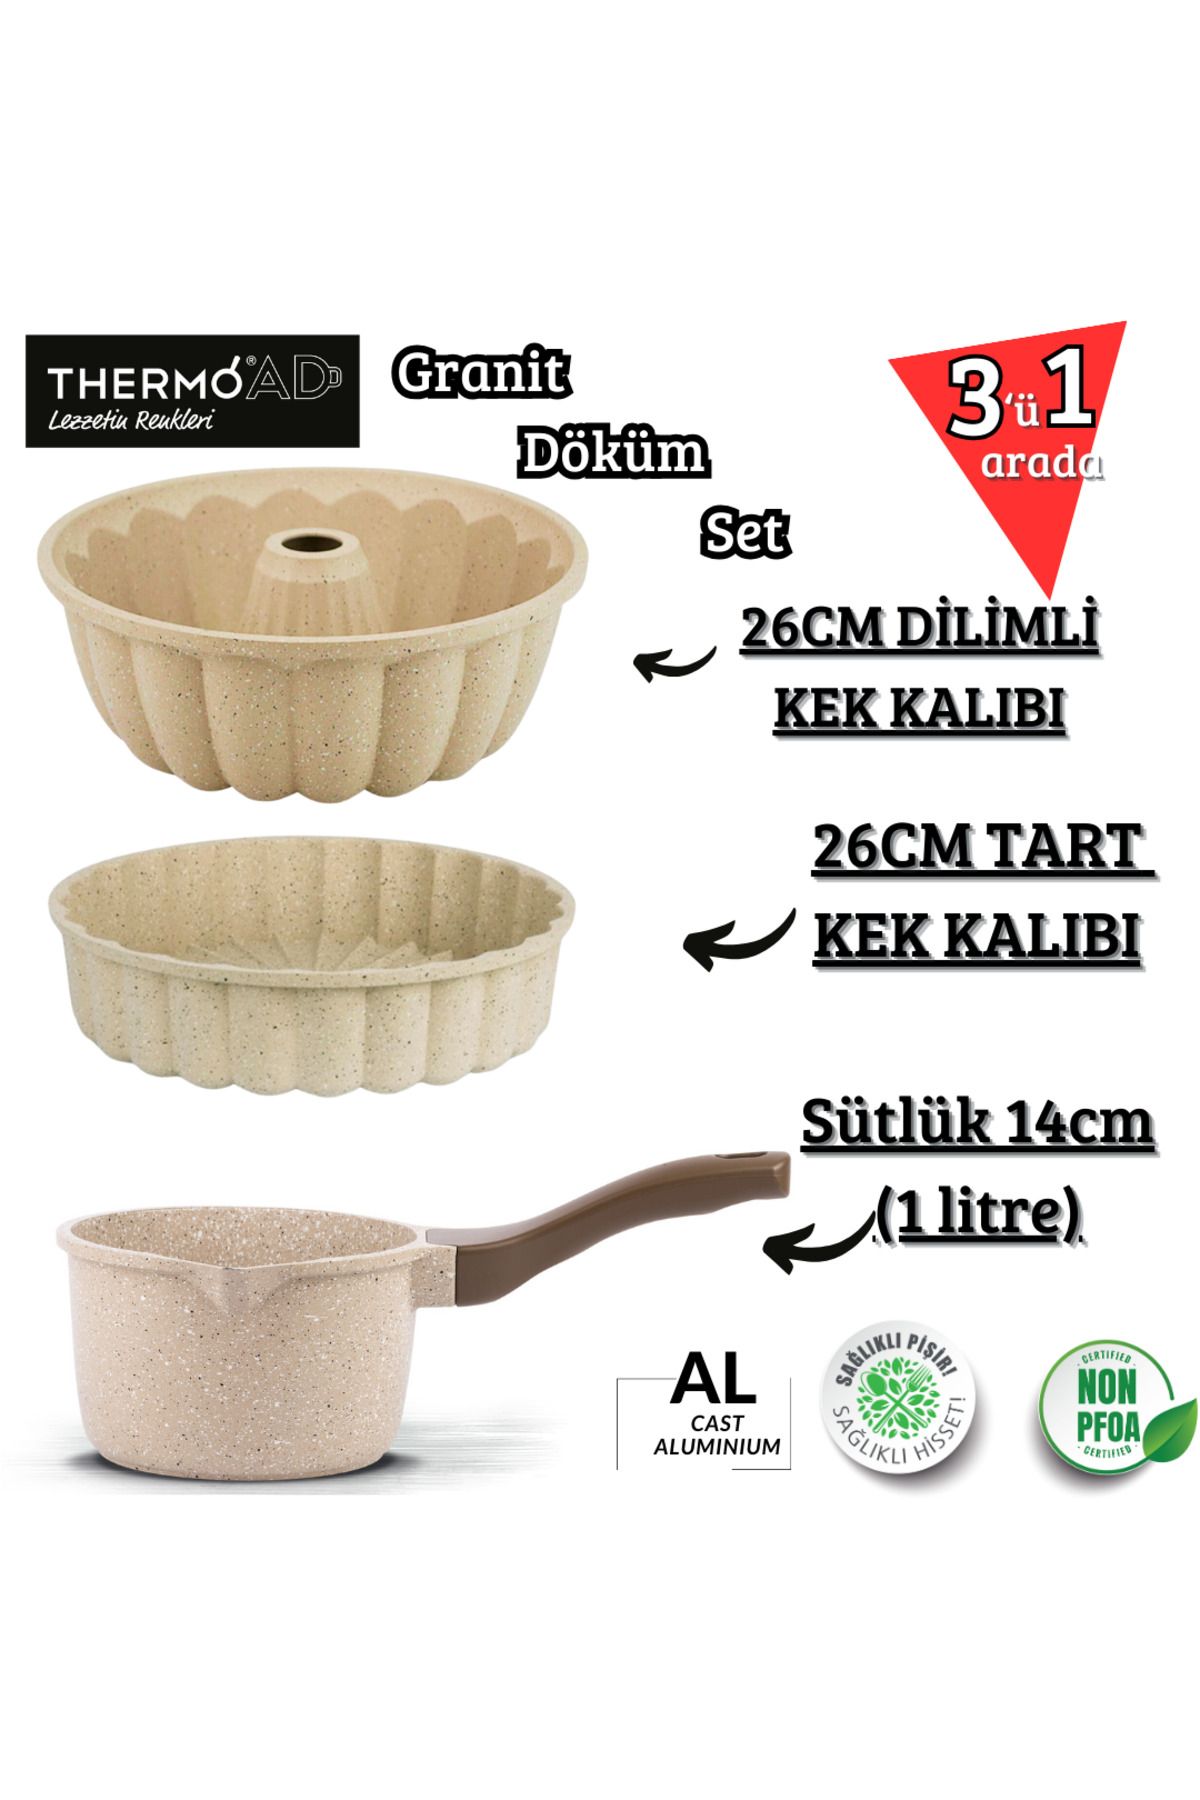 ThermoAD Alüminyum Döküm 3'lü Set Sütlük , Dilimli Ve Tart Kek Kalıbı (VİZON) 26 Cm Sık Dilimli Granit